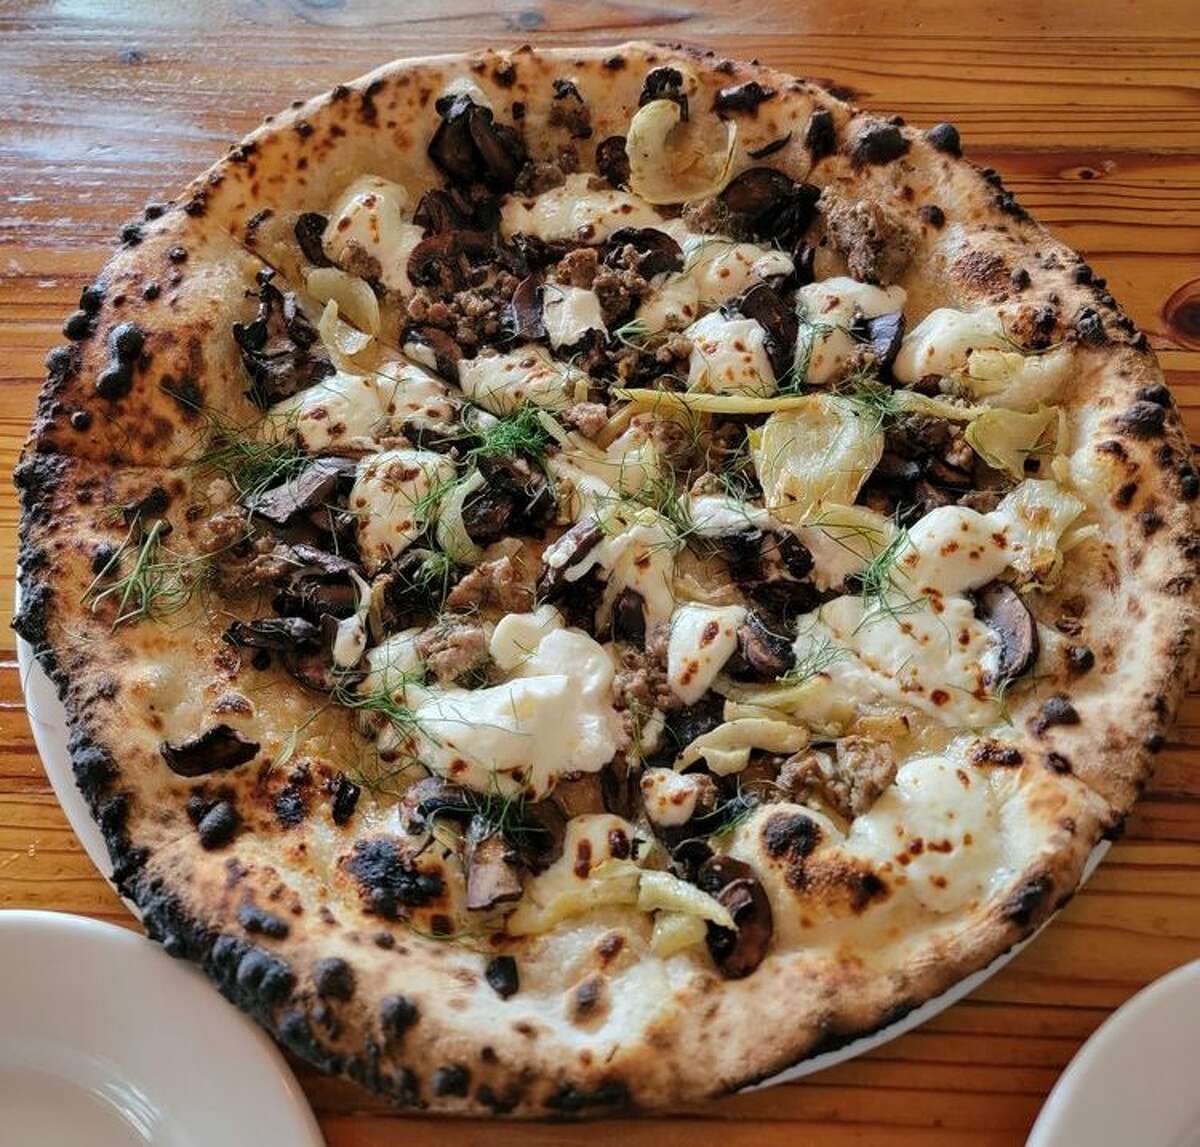 Una de las muchas pizzas en el menú de The Forge en Jack London Square en Oakland. La pizza GOAT contiene aceite de ajo, hinojo asado, champiñón, salchicha, mozzarella, queso de cabra y aceite de trufa.